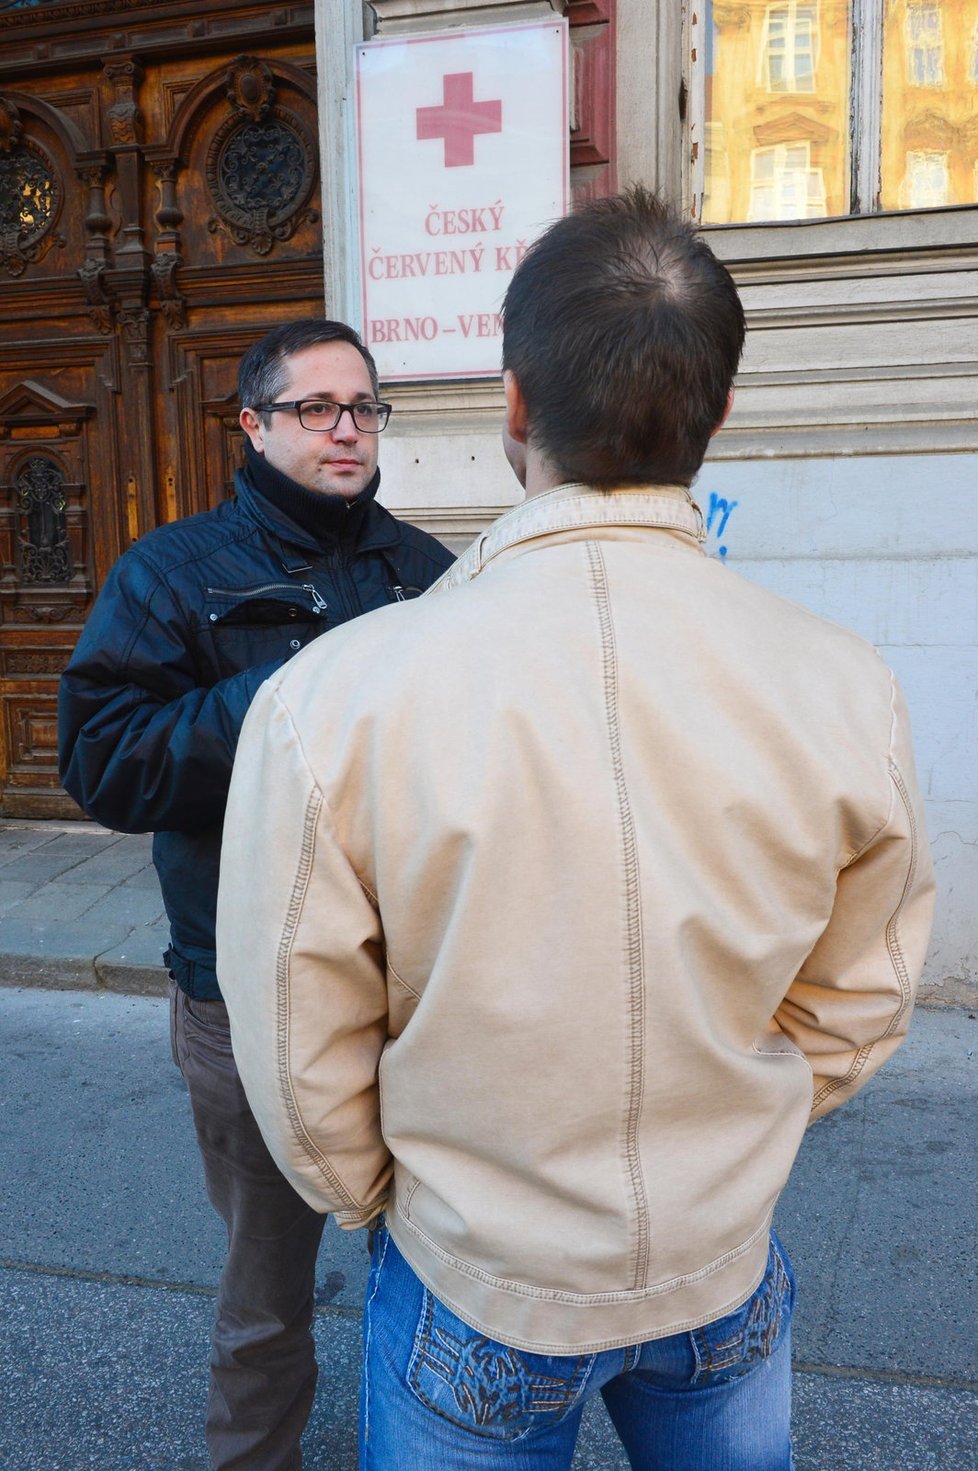 Miroslav Dobrovodský poskytl redaktorovi Blesku rozhovor s tím, že neukáže svou tvář.